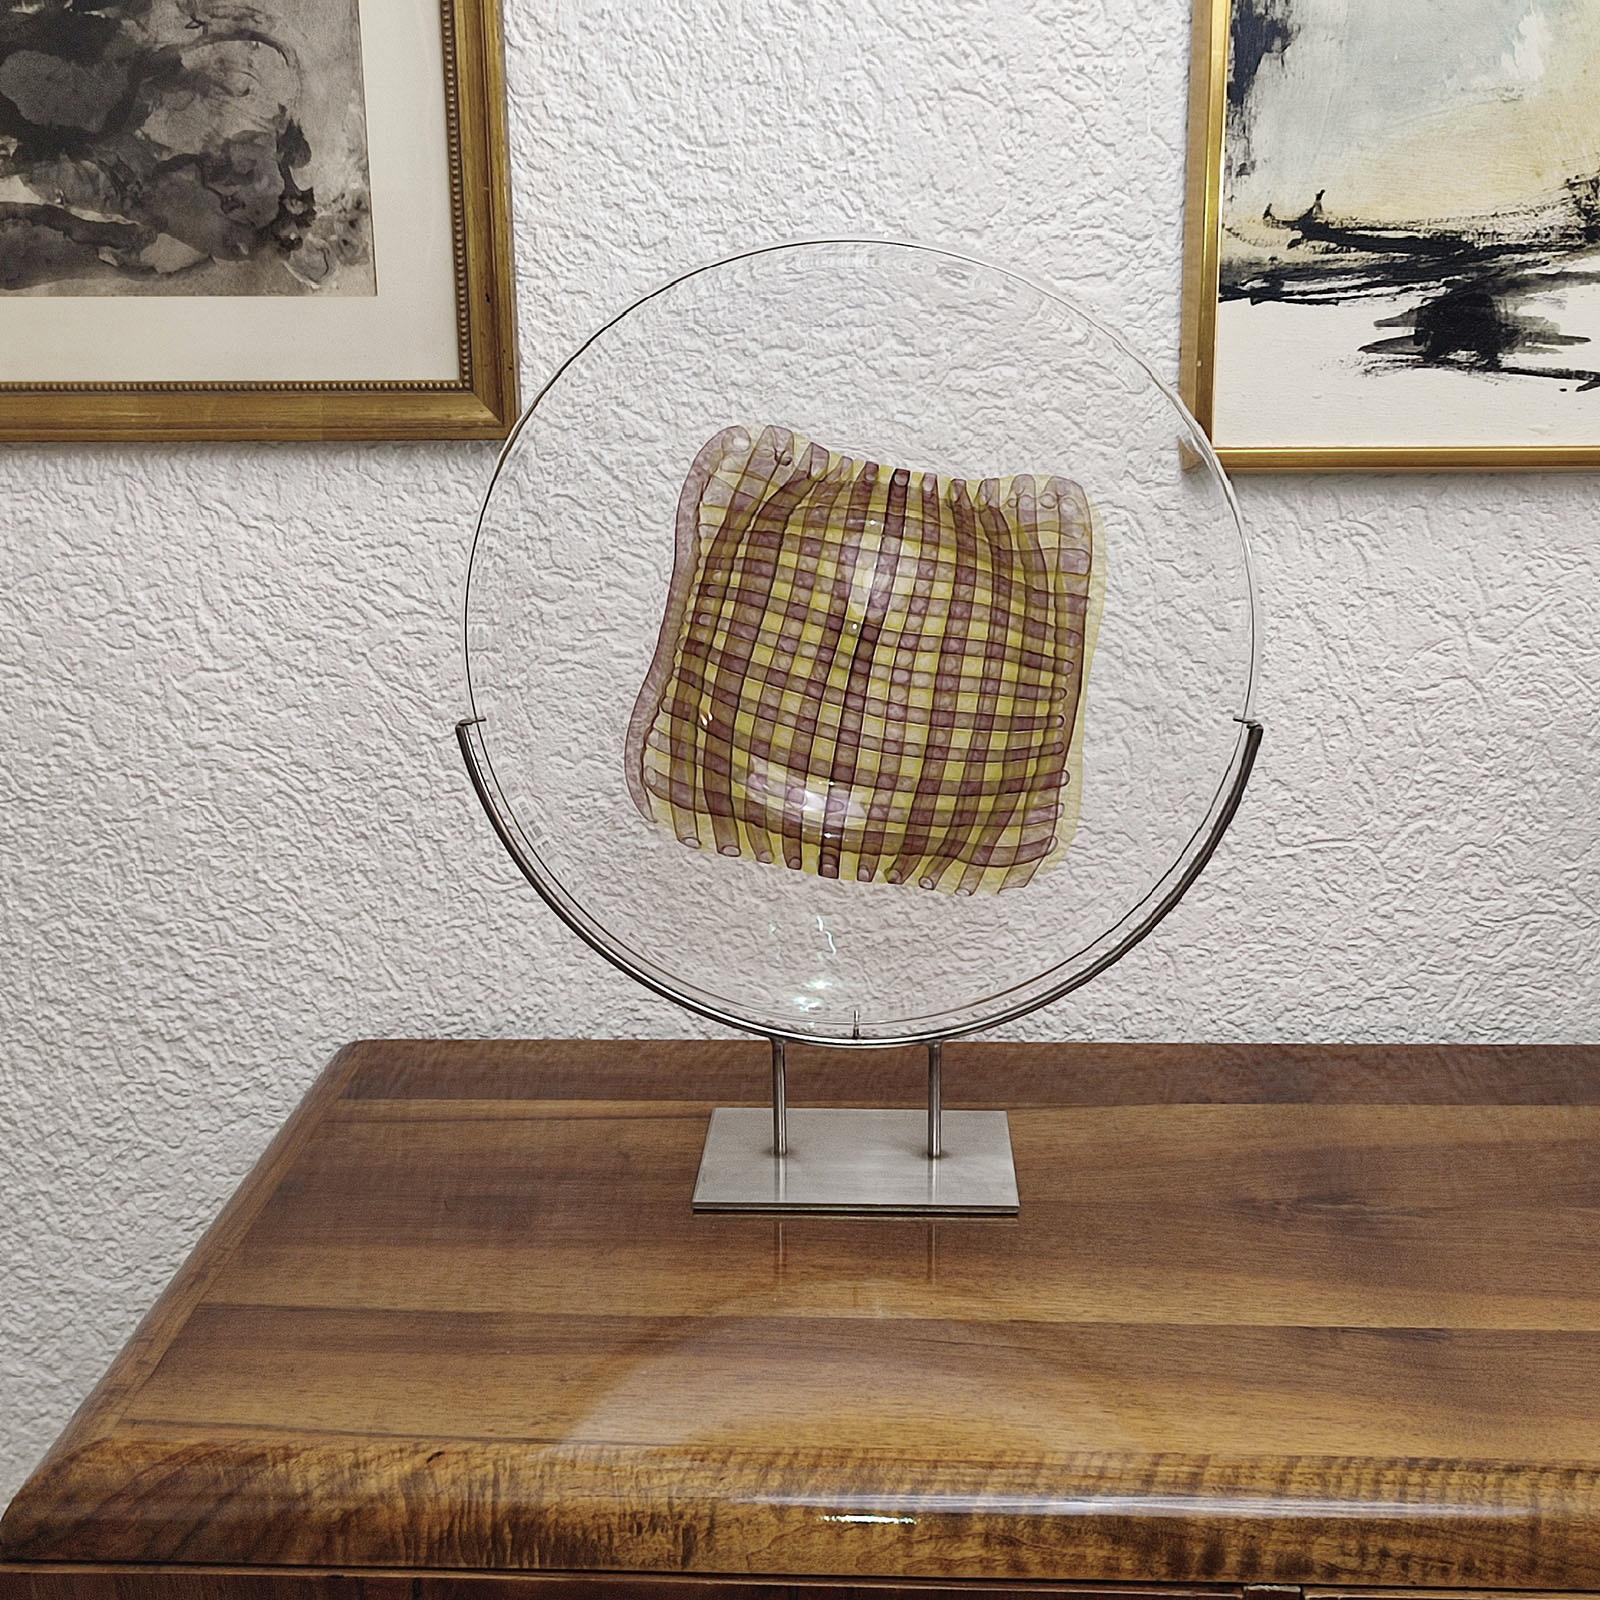 Gary Beecham, Großer dekorativer Glasteller „Textile-Gefäß“, 1982
Farbloses Kamee-Glas, mit zweischichtigem Bandmuster in der Mitte, wie ein gelb und braun kariertes Tuch. Halterung aus gebürstetem Edelstahl.
Signiert und datiert unter dem Boden